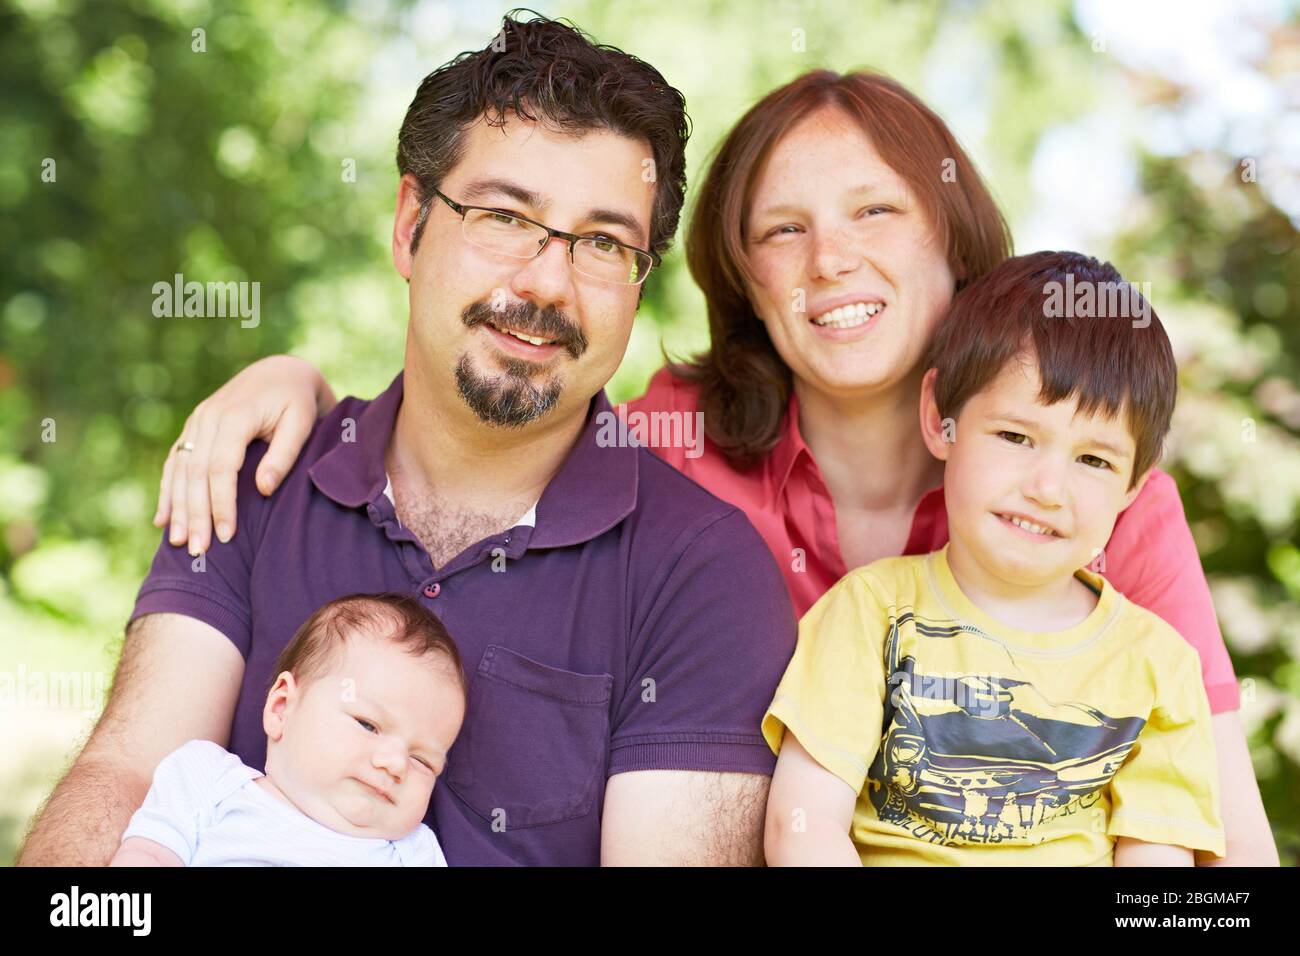 Glückliches Portrait mit Vater, Mutter, Kind und Baby im Grünen Stock Photo